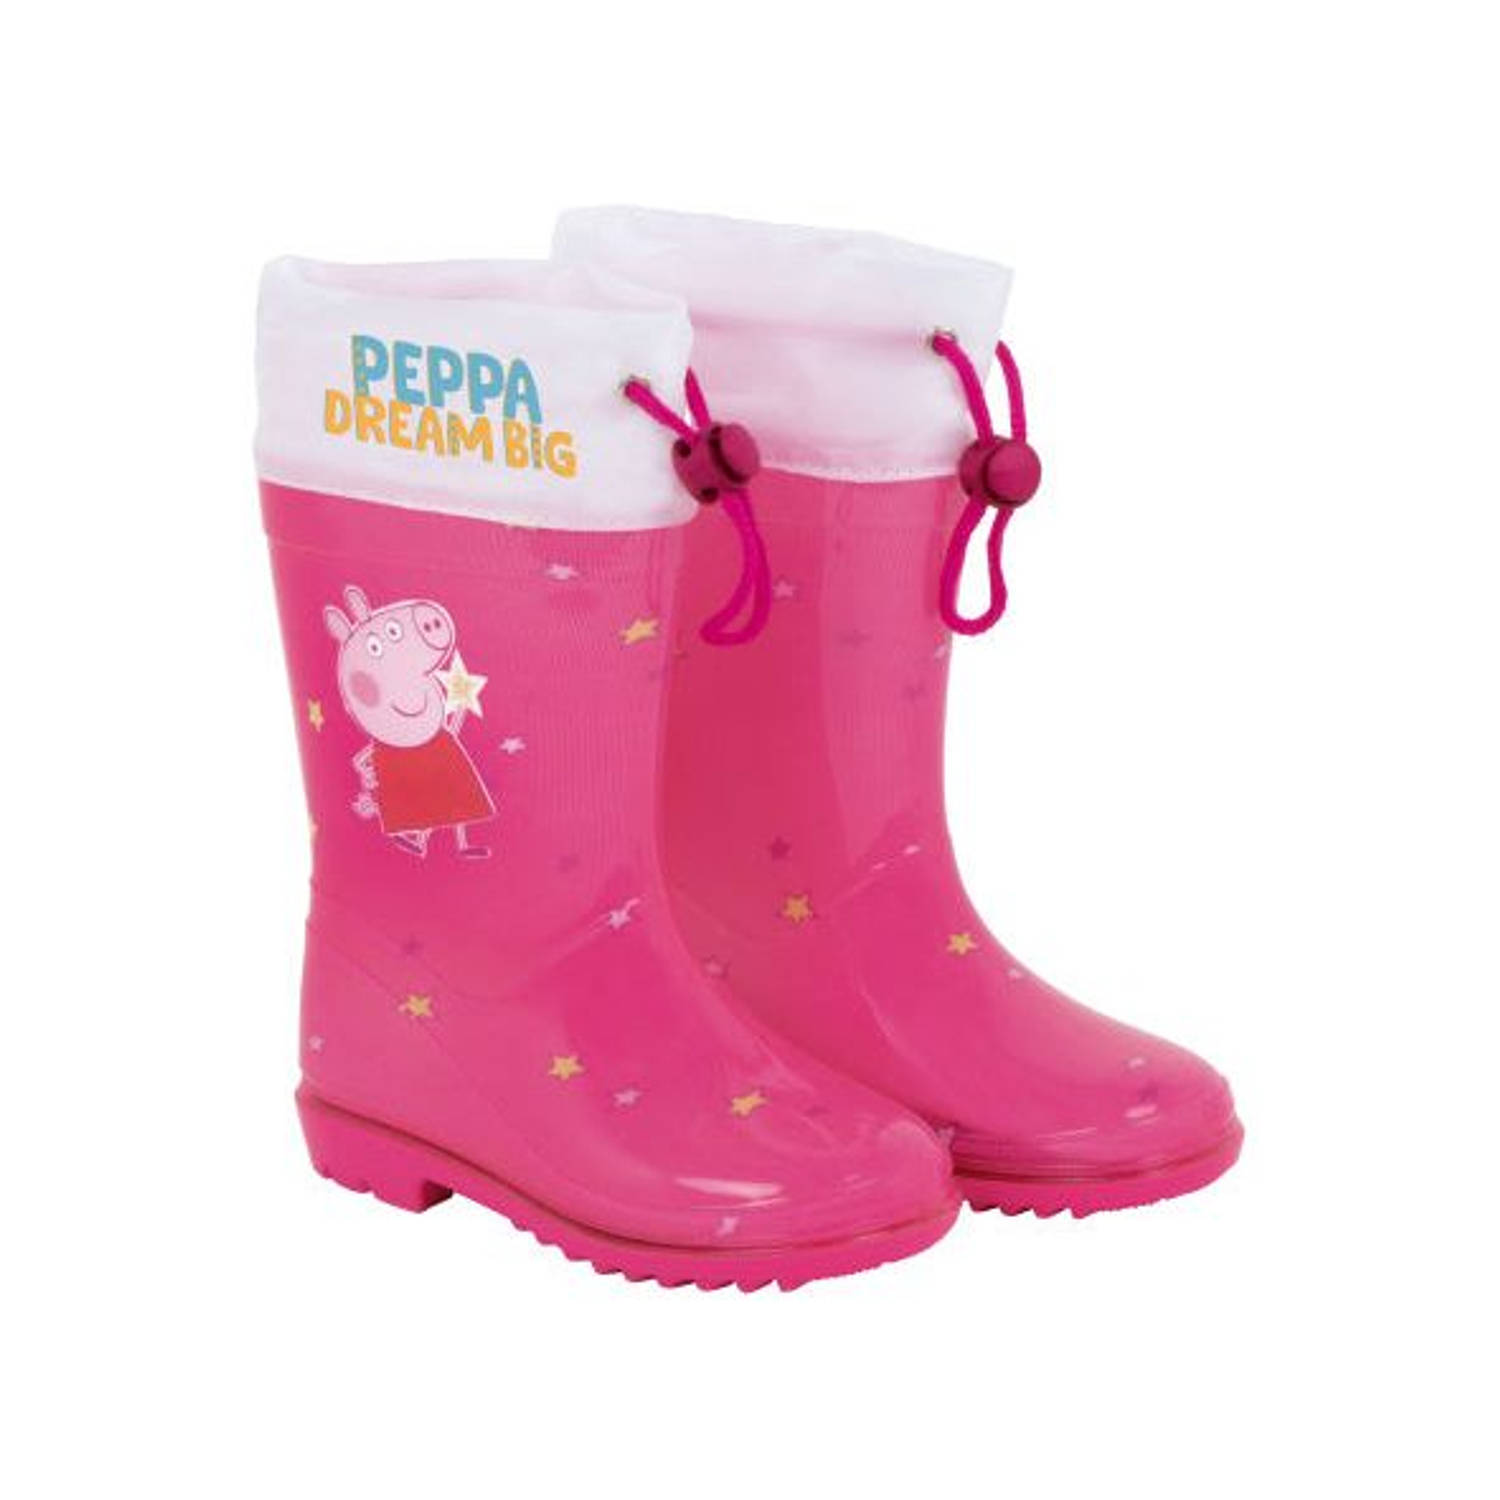 regenlaarzen Peppa Pig Dream Big meisjes PVC roze-wit maat 32